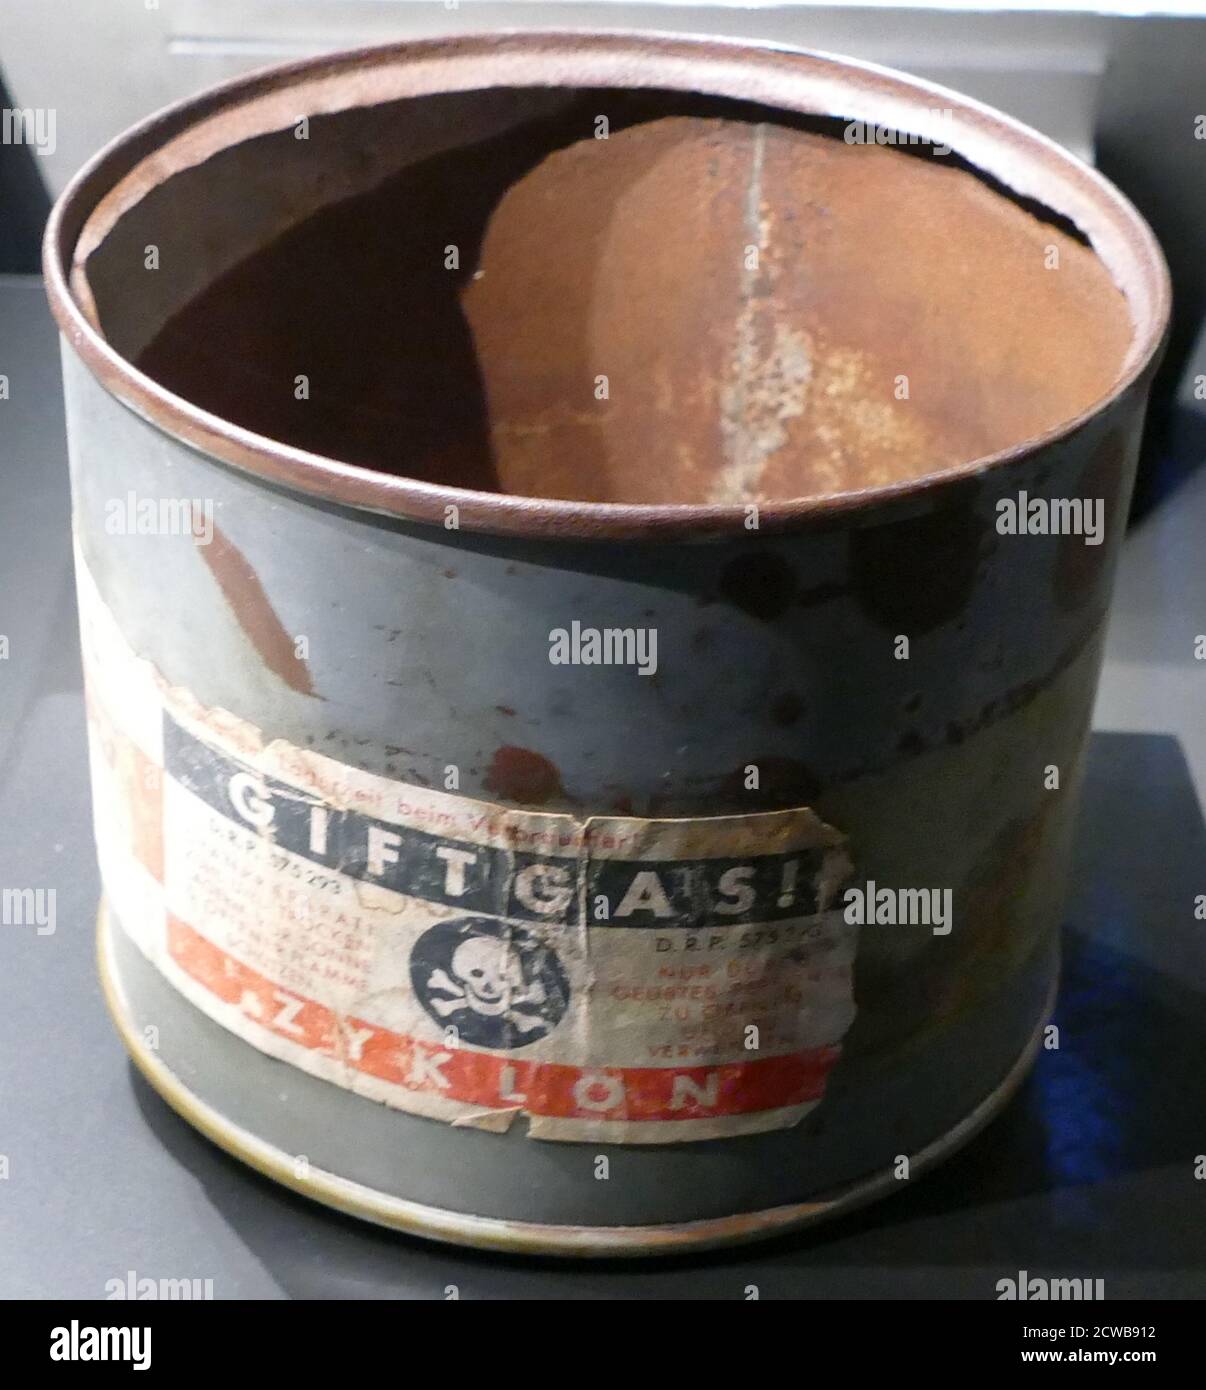 CAN of Zyklon B, un pesticida inventato in Germania e utilizzato in Germania nazista nelle camere a gas per uccidere gli ebrei come parte dell'Olocausto, come ad Auschwitz e in altri campi di sterminio Foto Stock